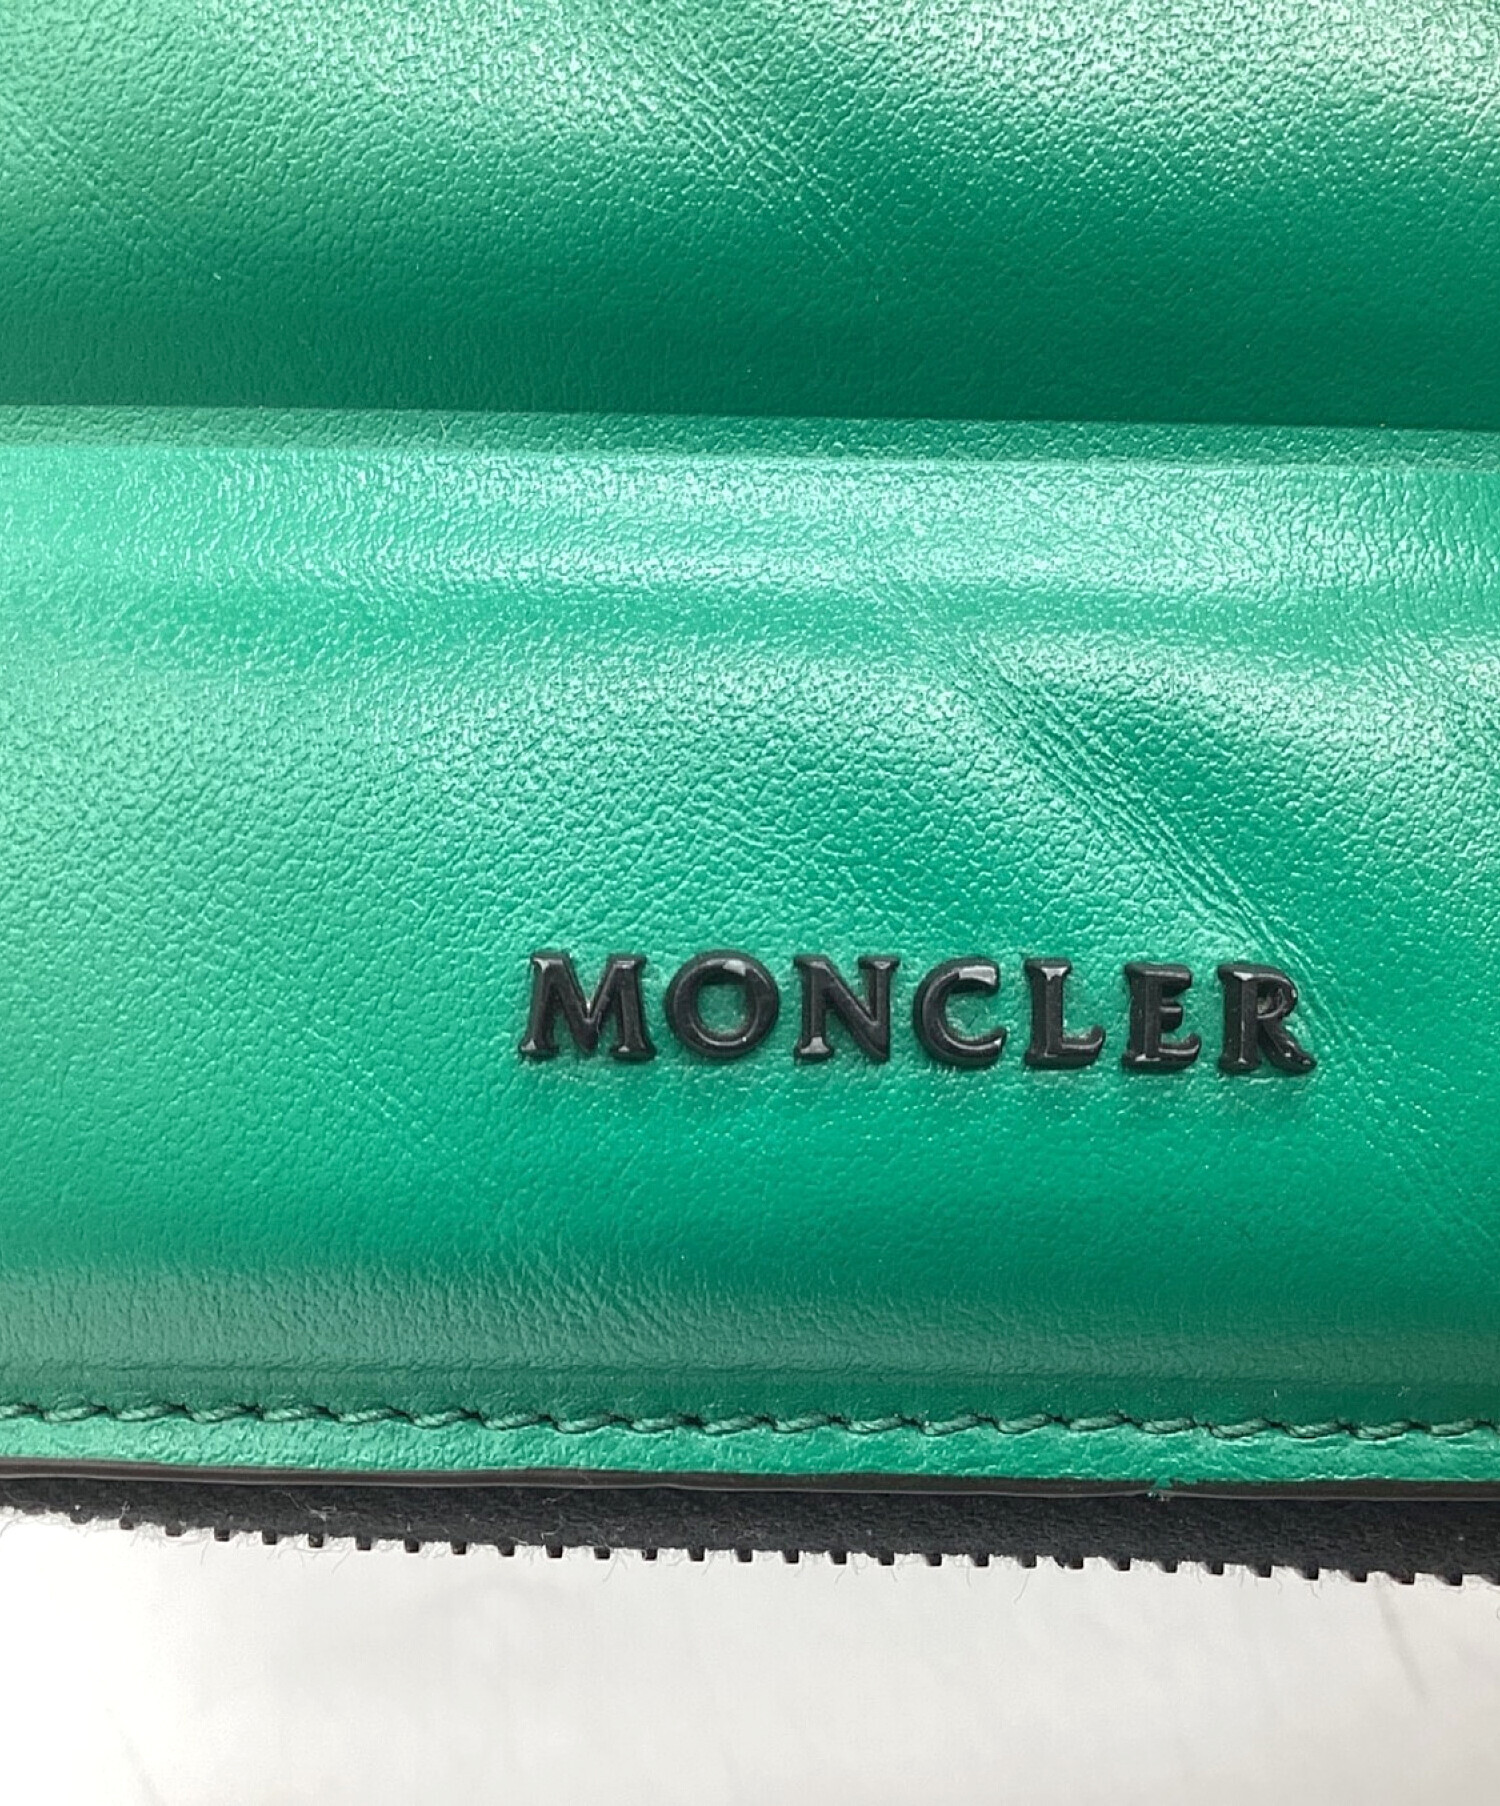 MONCLER (モンクレール) ストラップ付ウォレット グリーン